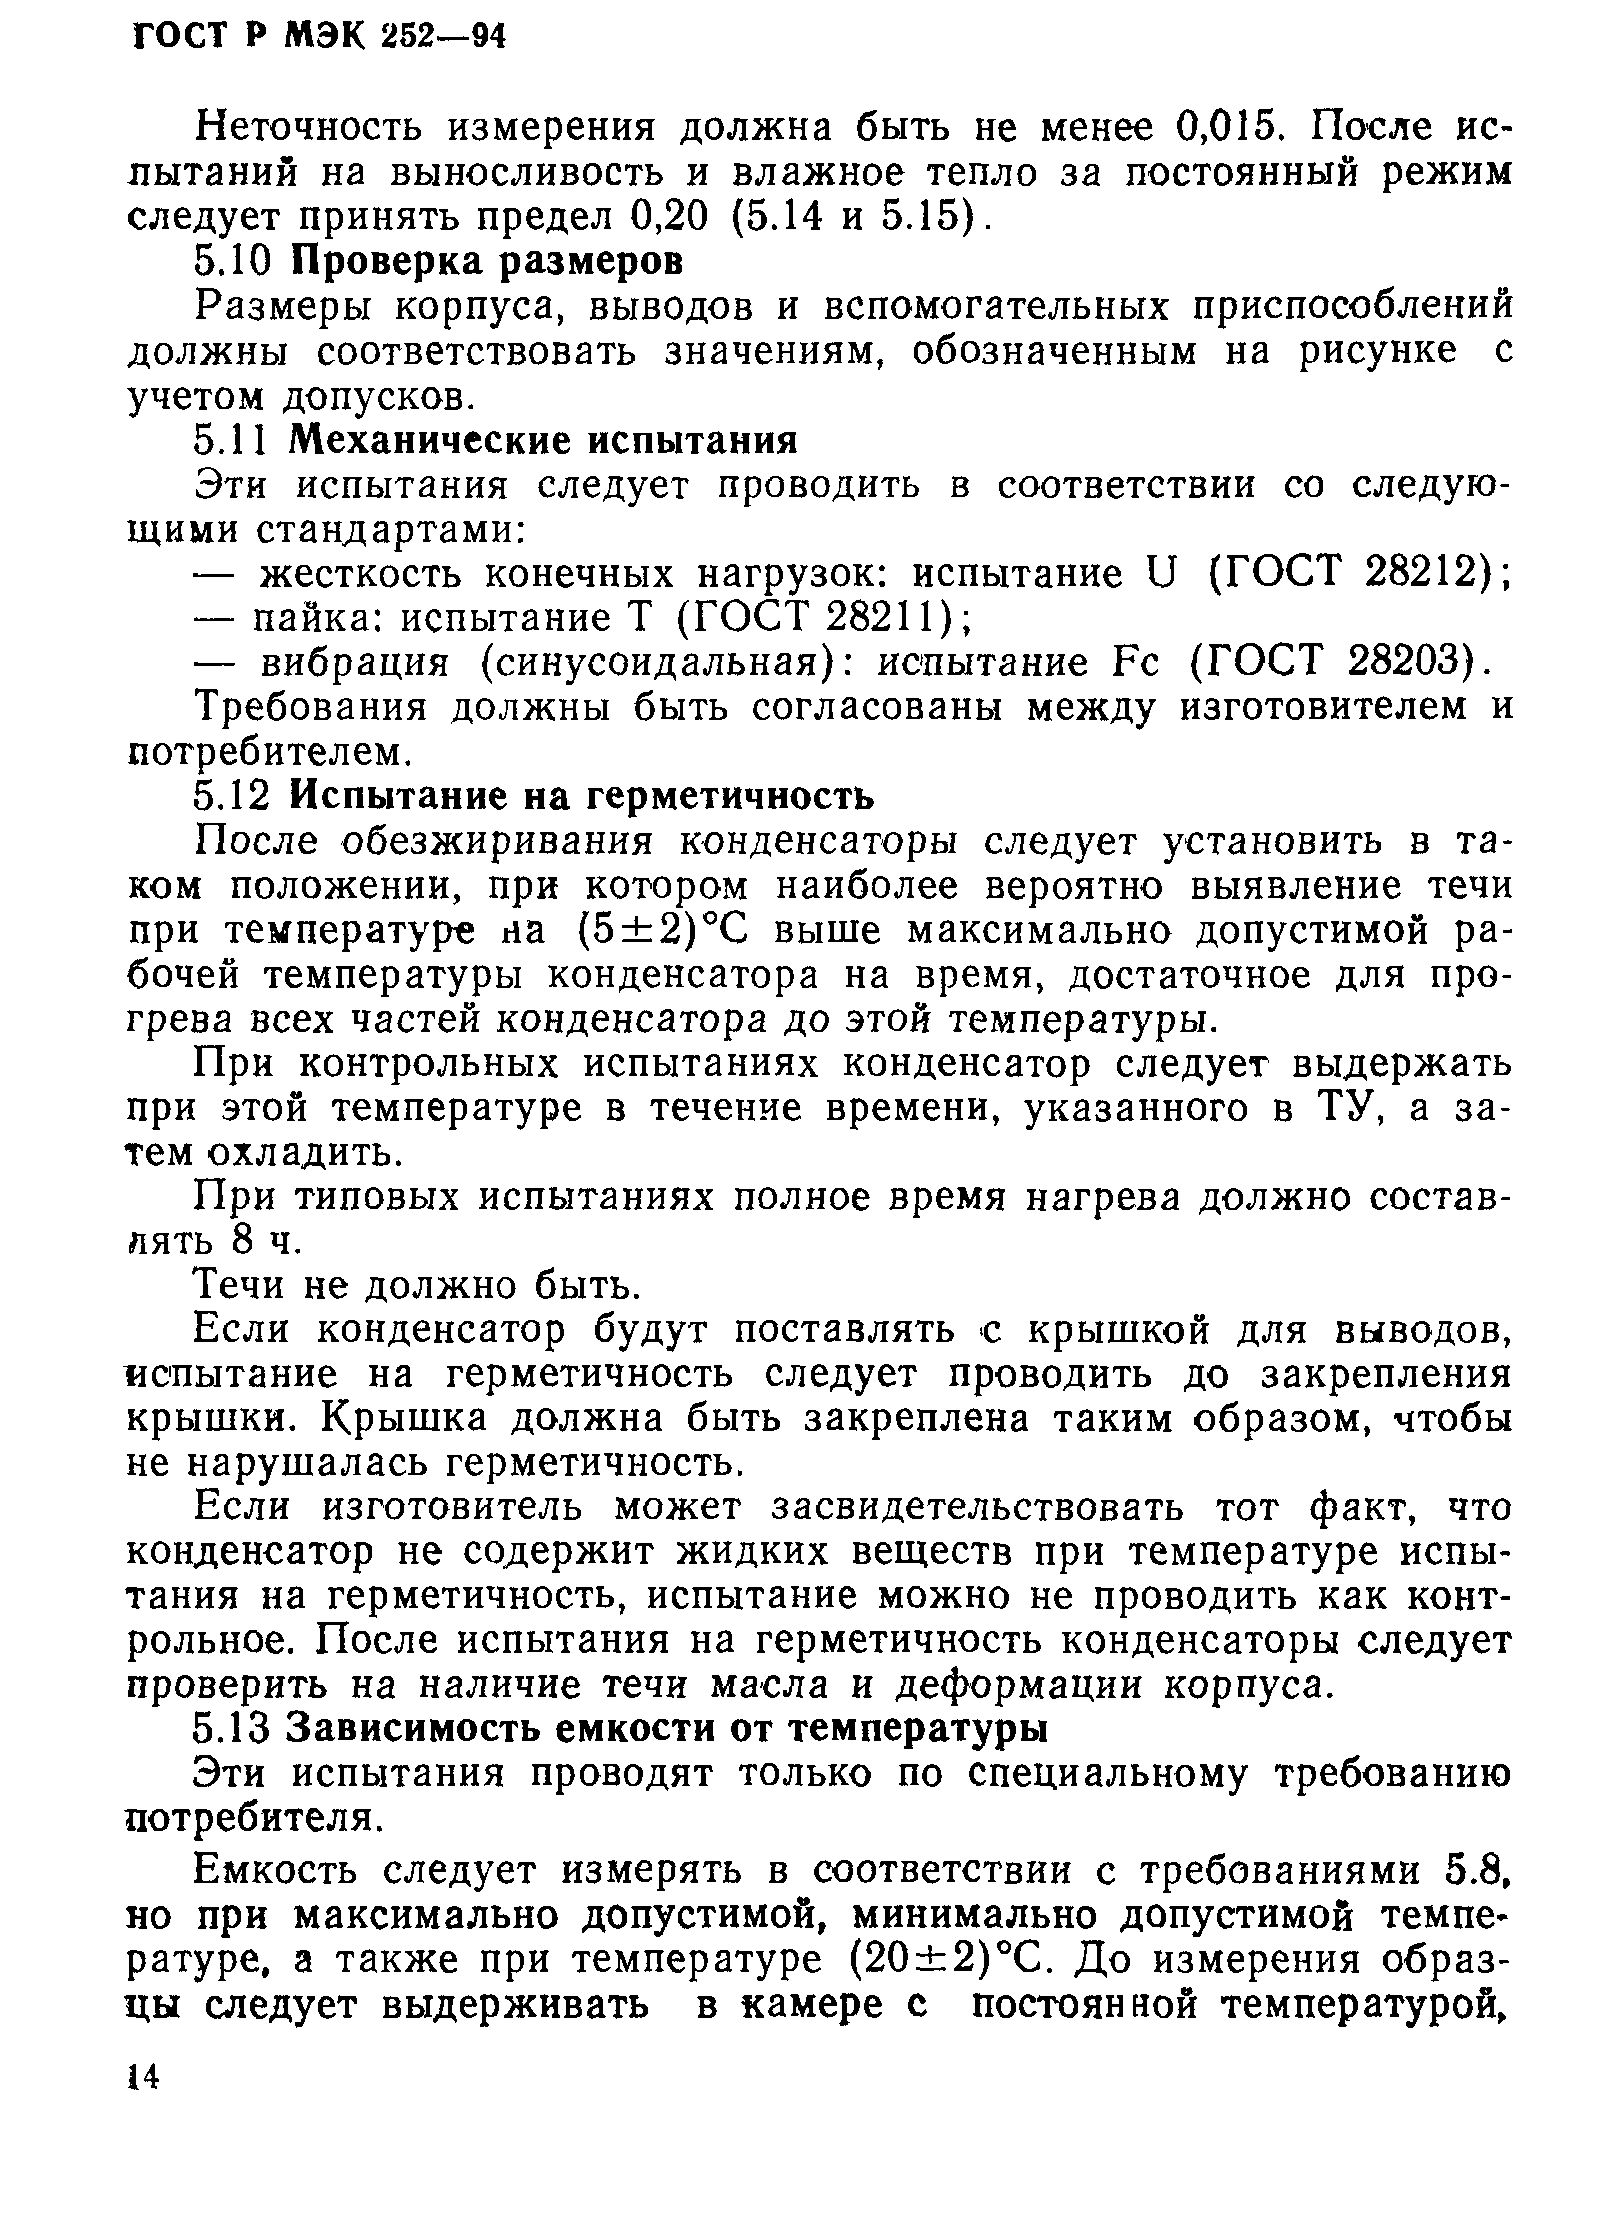 ГОСТ Р МЭК 252-94